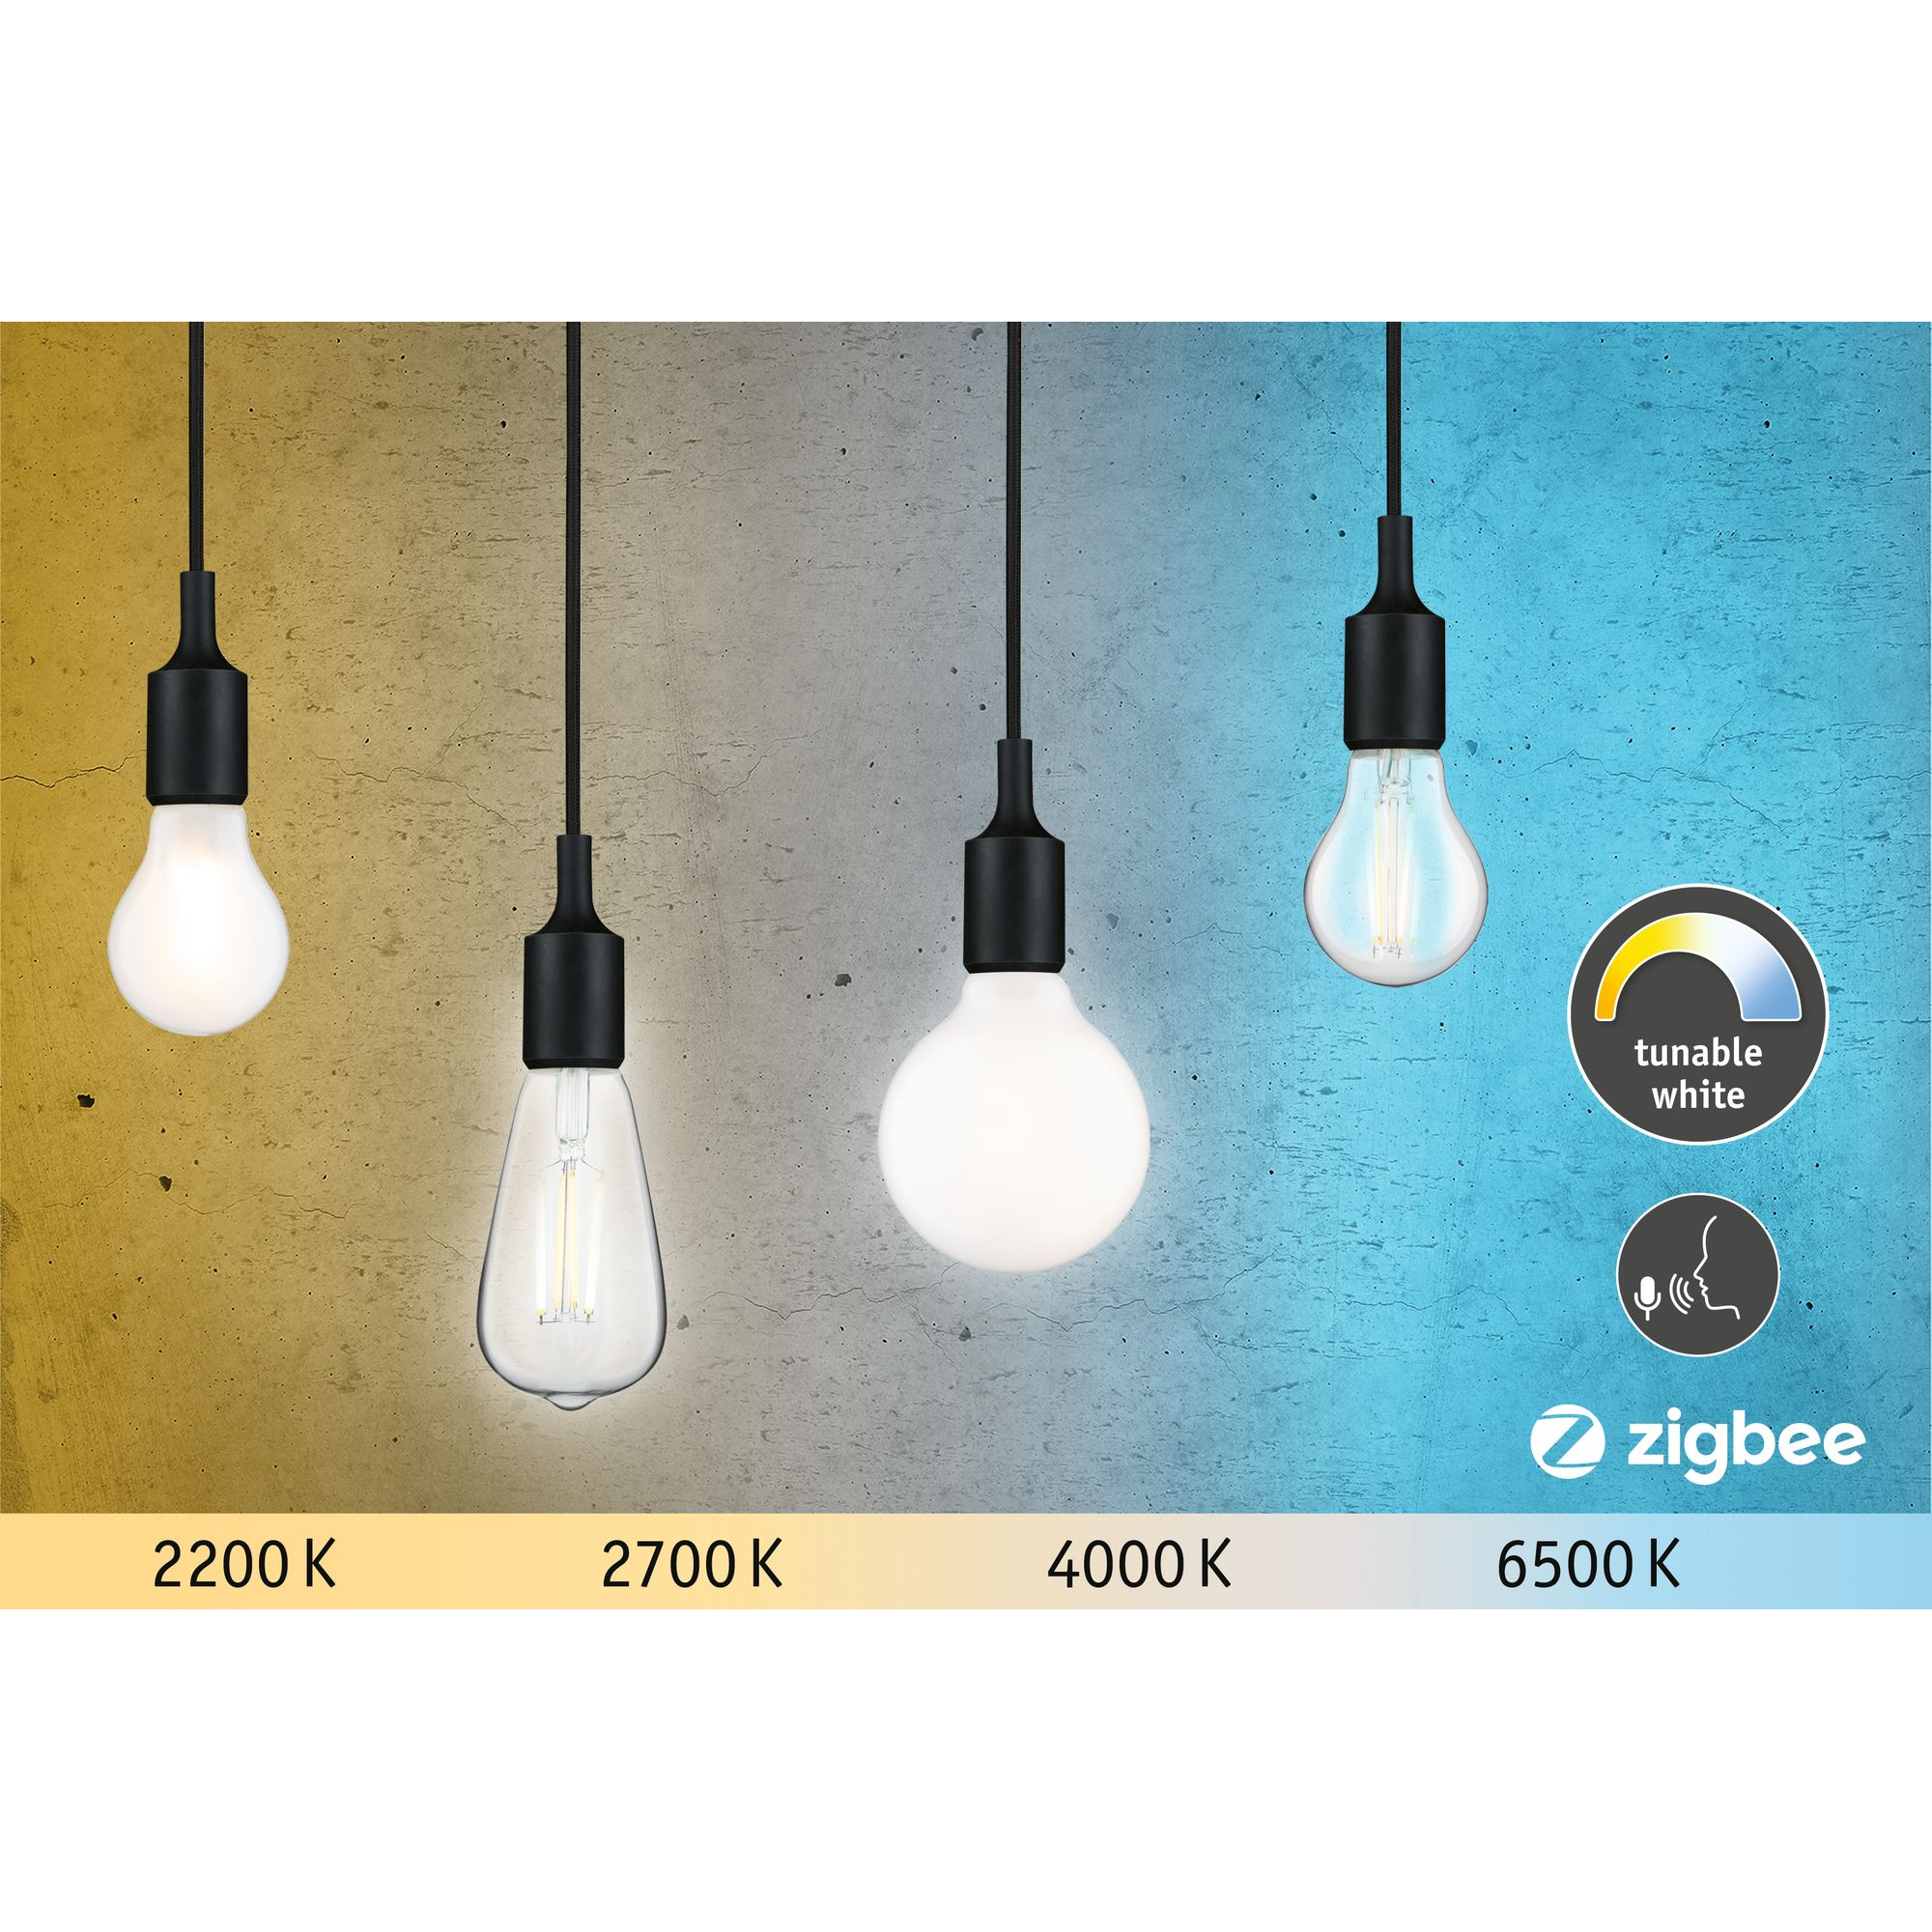 LED-Globelampe ZigBee E27 7W (60W) 806 lm opal warm/tageslichtweiß + product picture